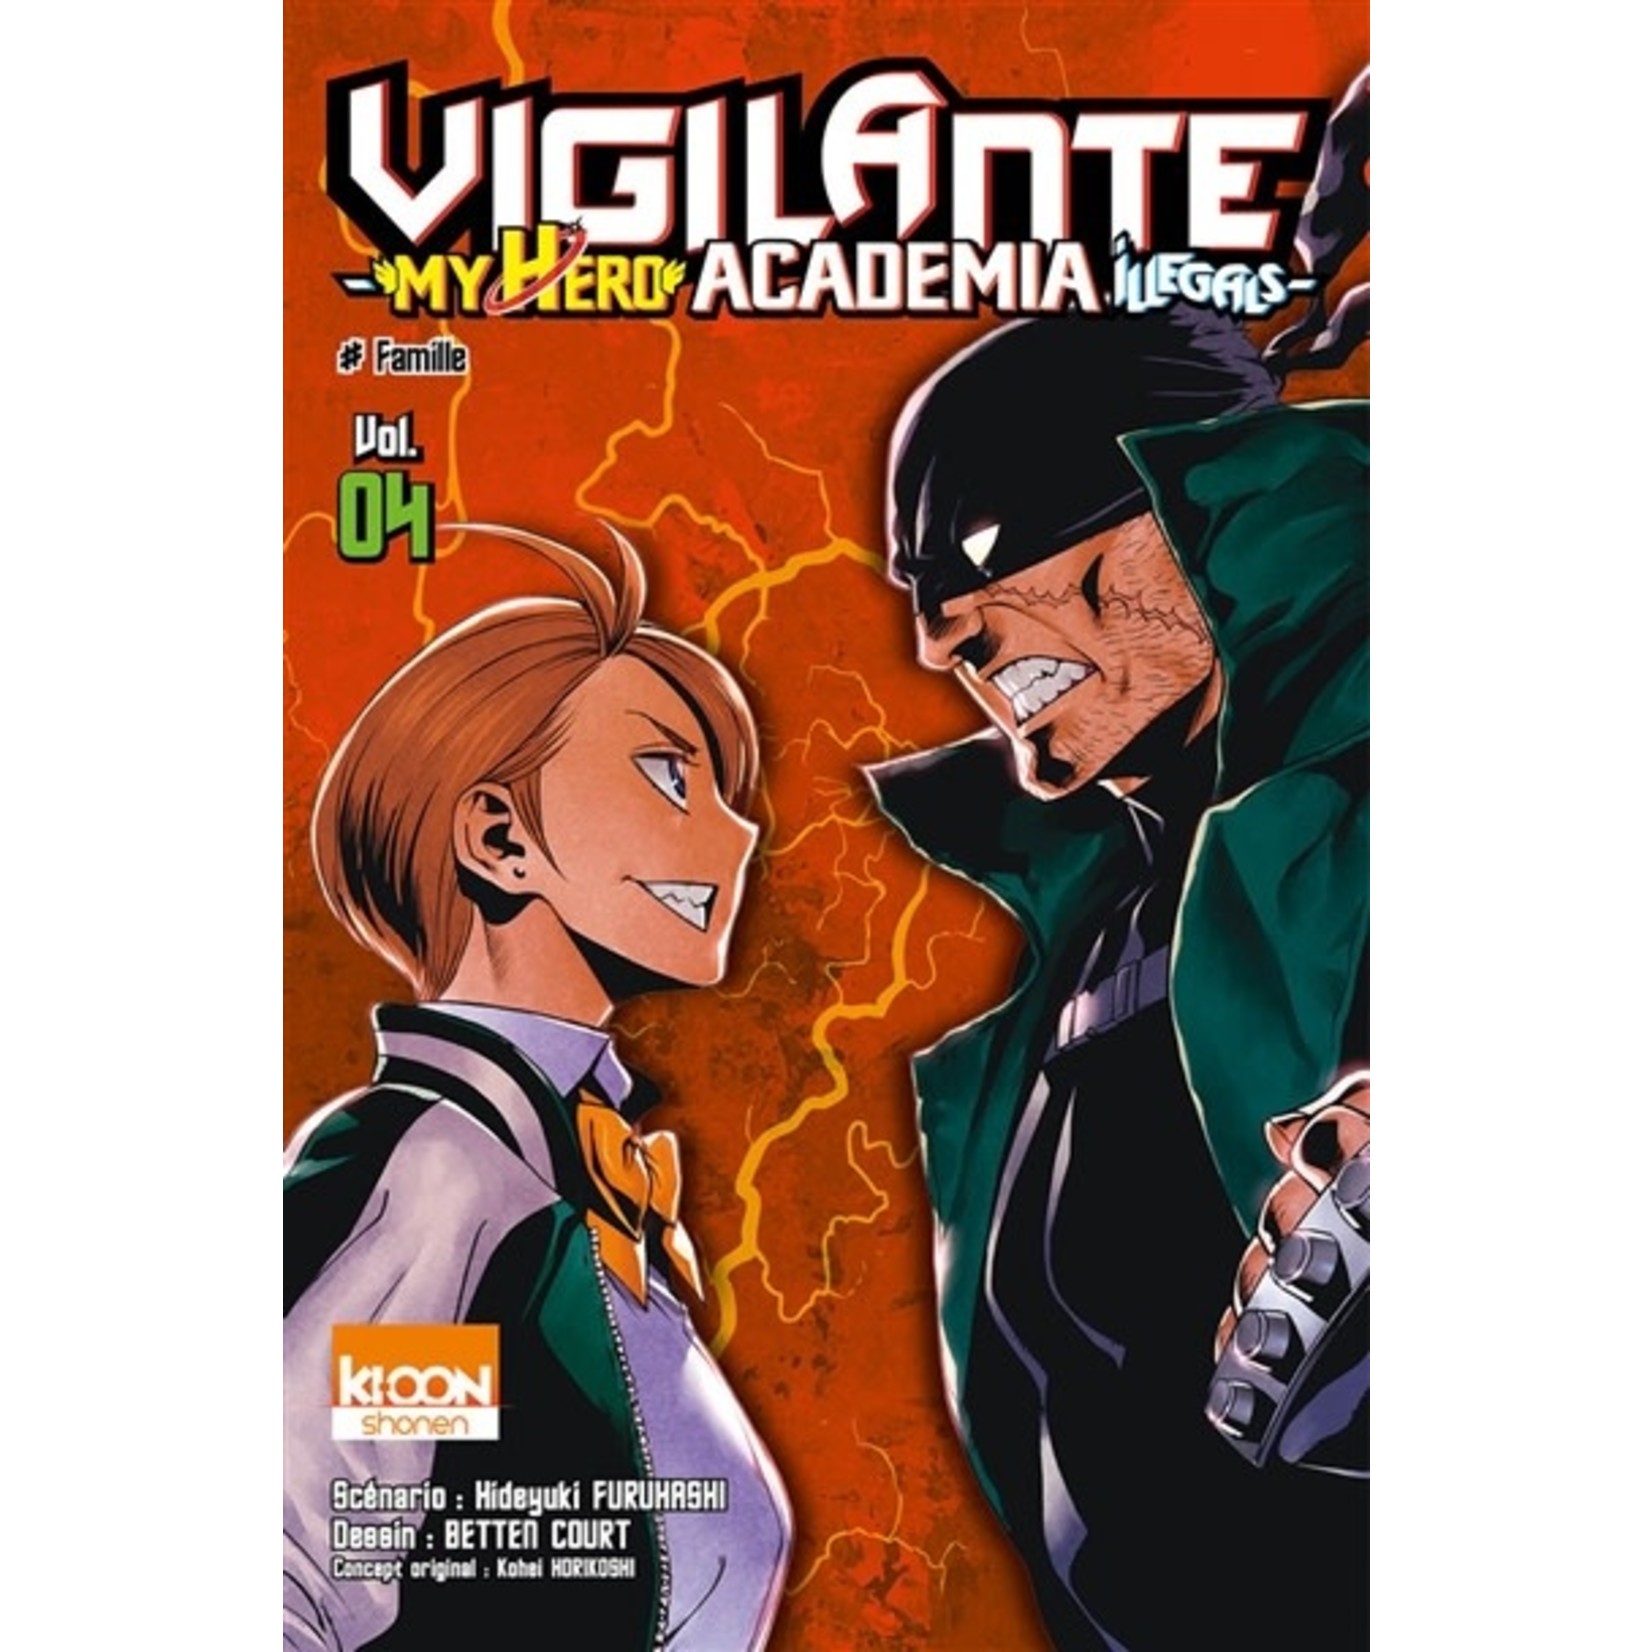 0-Pika My hero academia - Vigilante